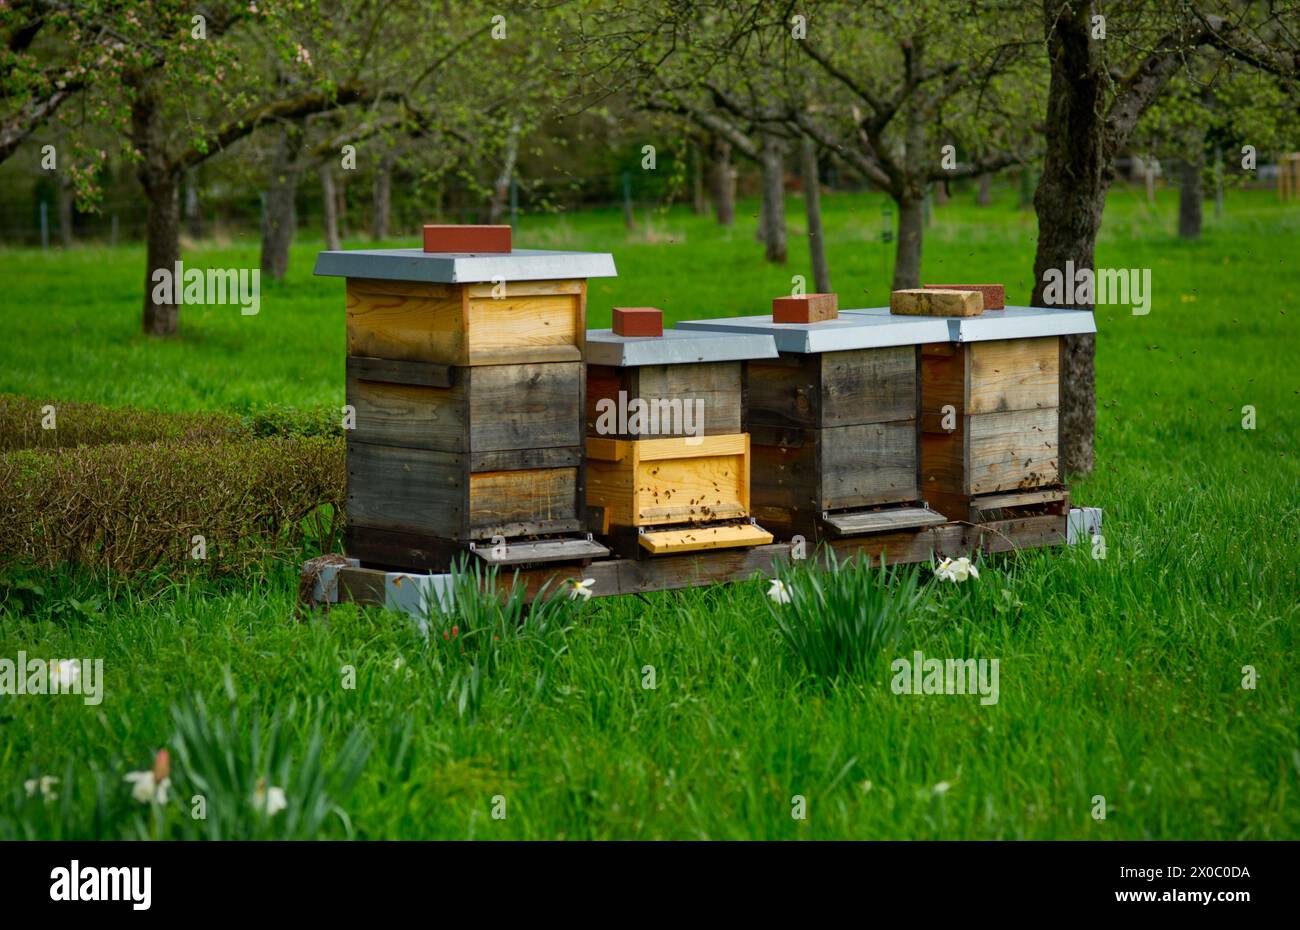 Mehrere Bienenstöcke für die Imkerei in einem Garten Stockfoto